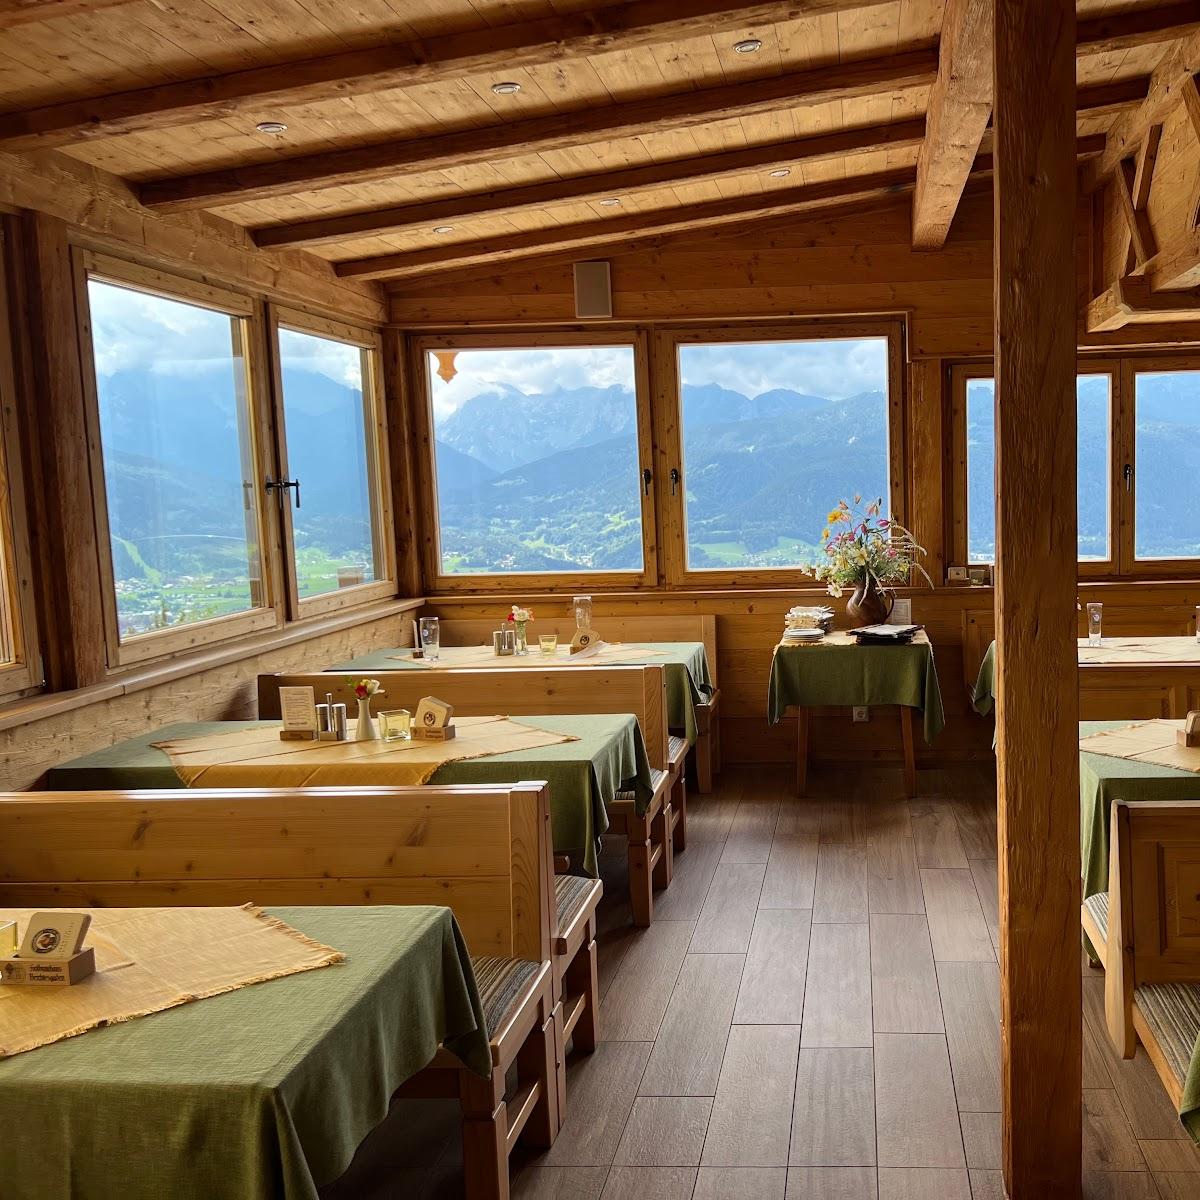 Restaurant "Gasthof Hochlenzer" in Berchtesgaden